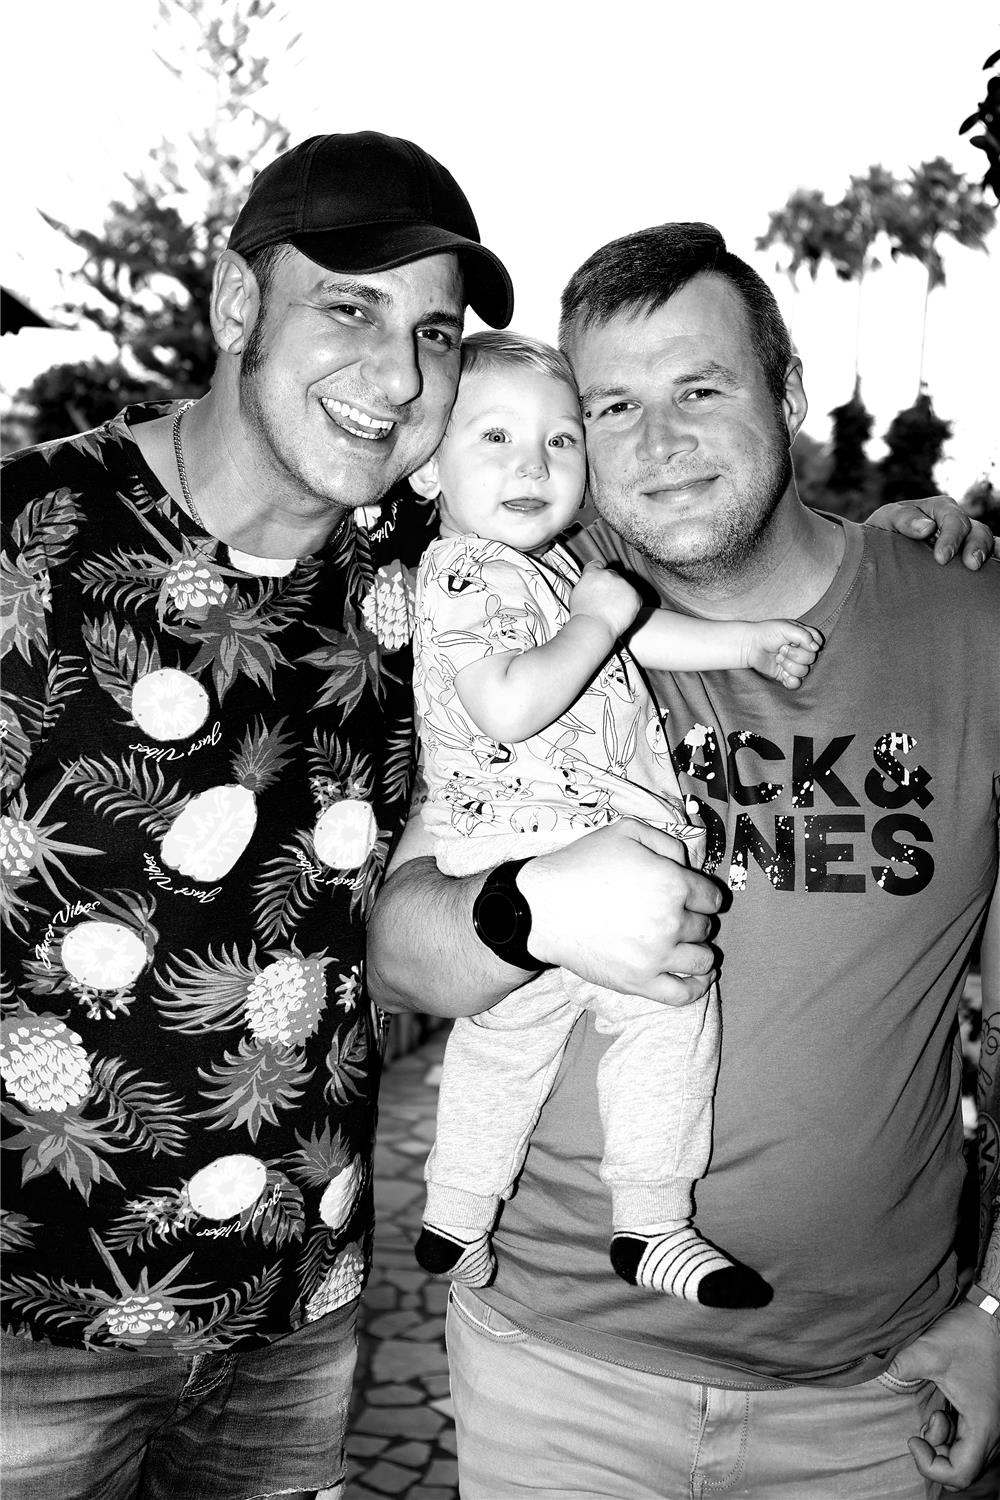 Schwarz-weiß Bild von zwei Männern, einer trägt ein Kleinkind auf dem Arm. 